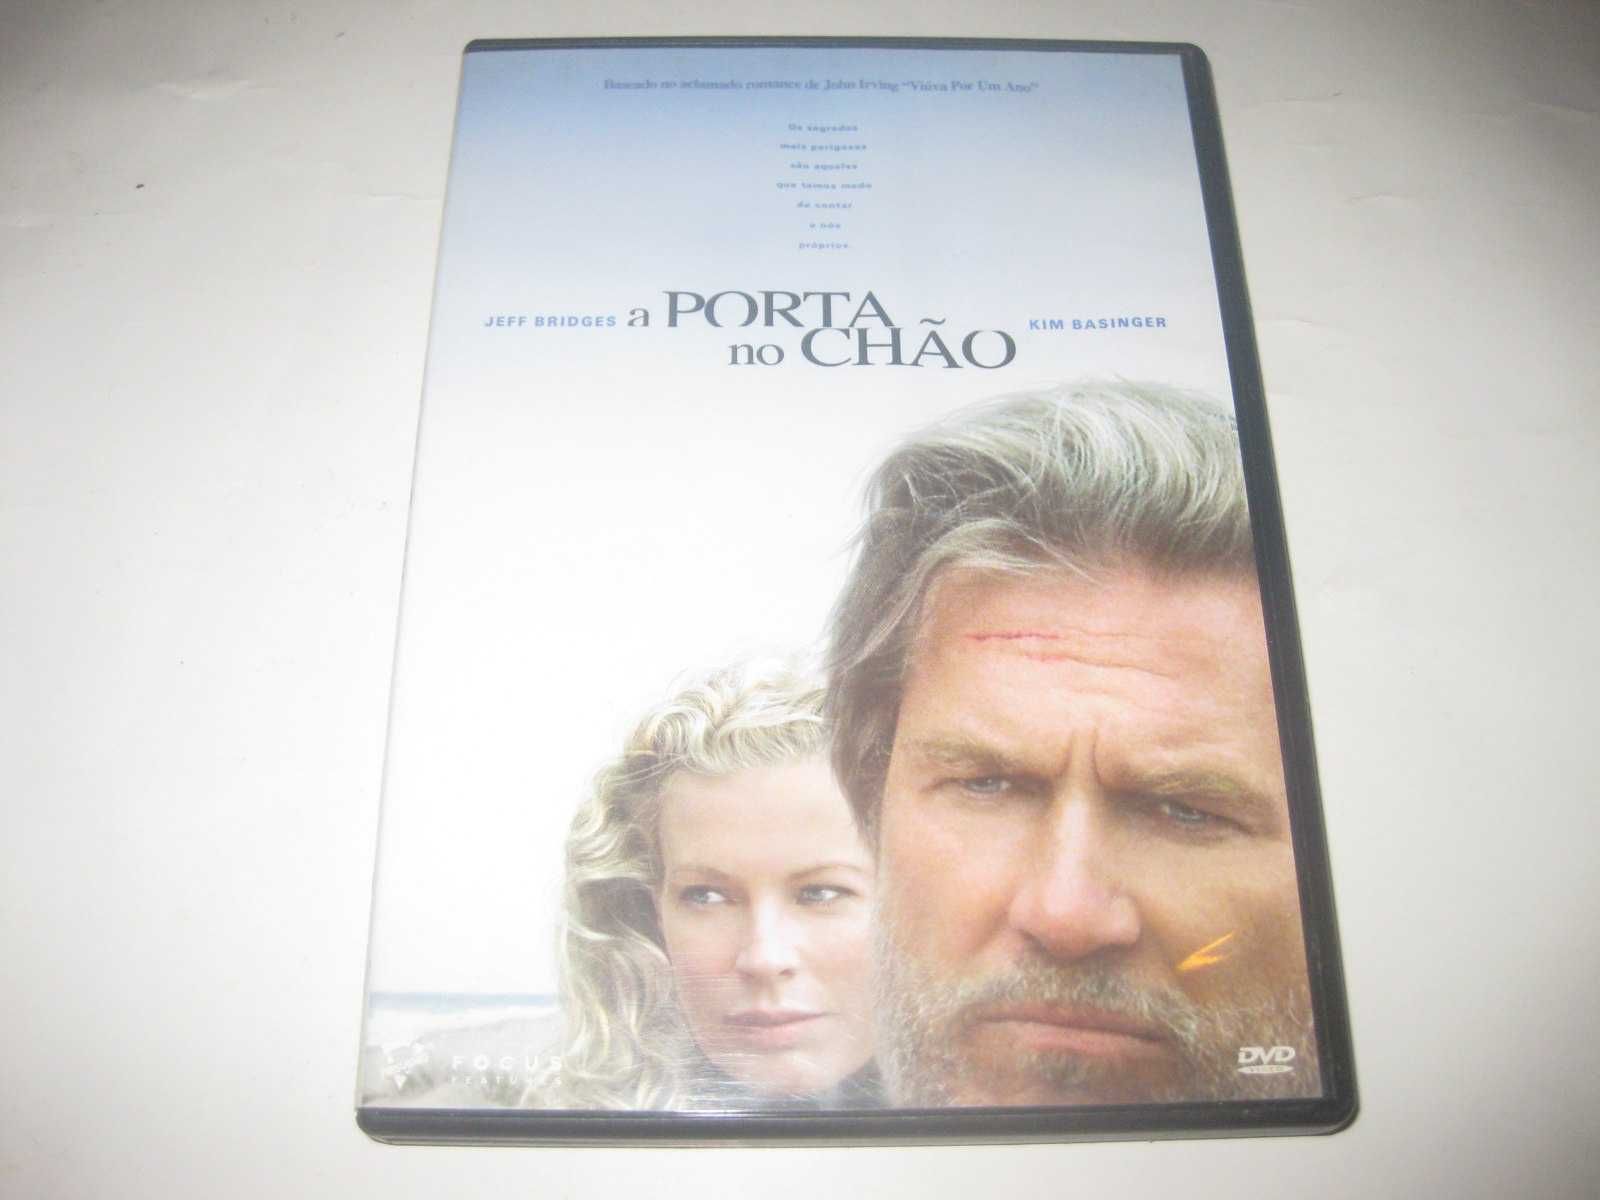 DVD "A Porta no Chão" com Jeff Bridges